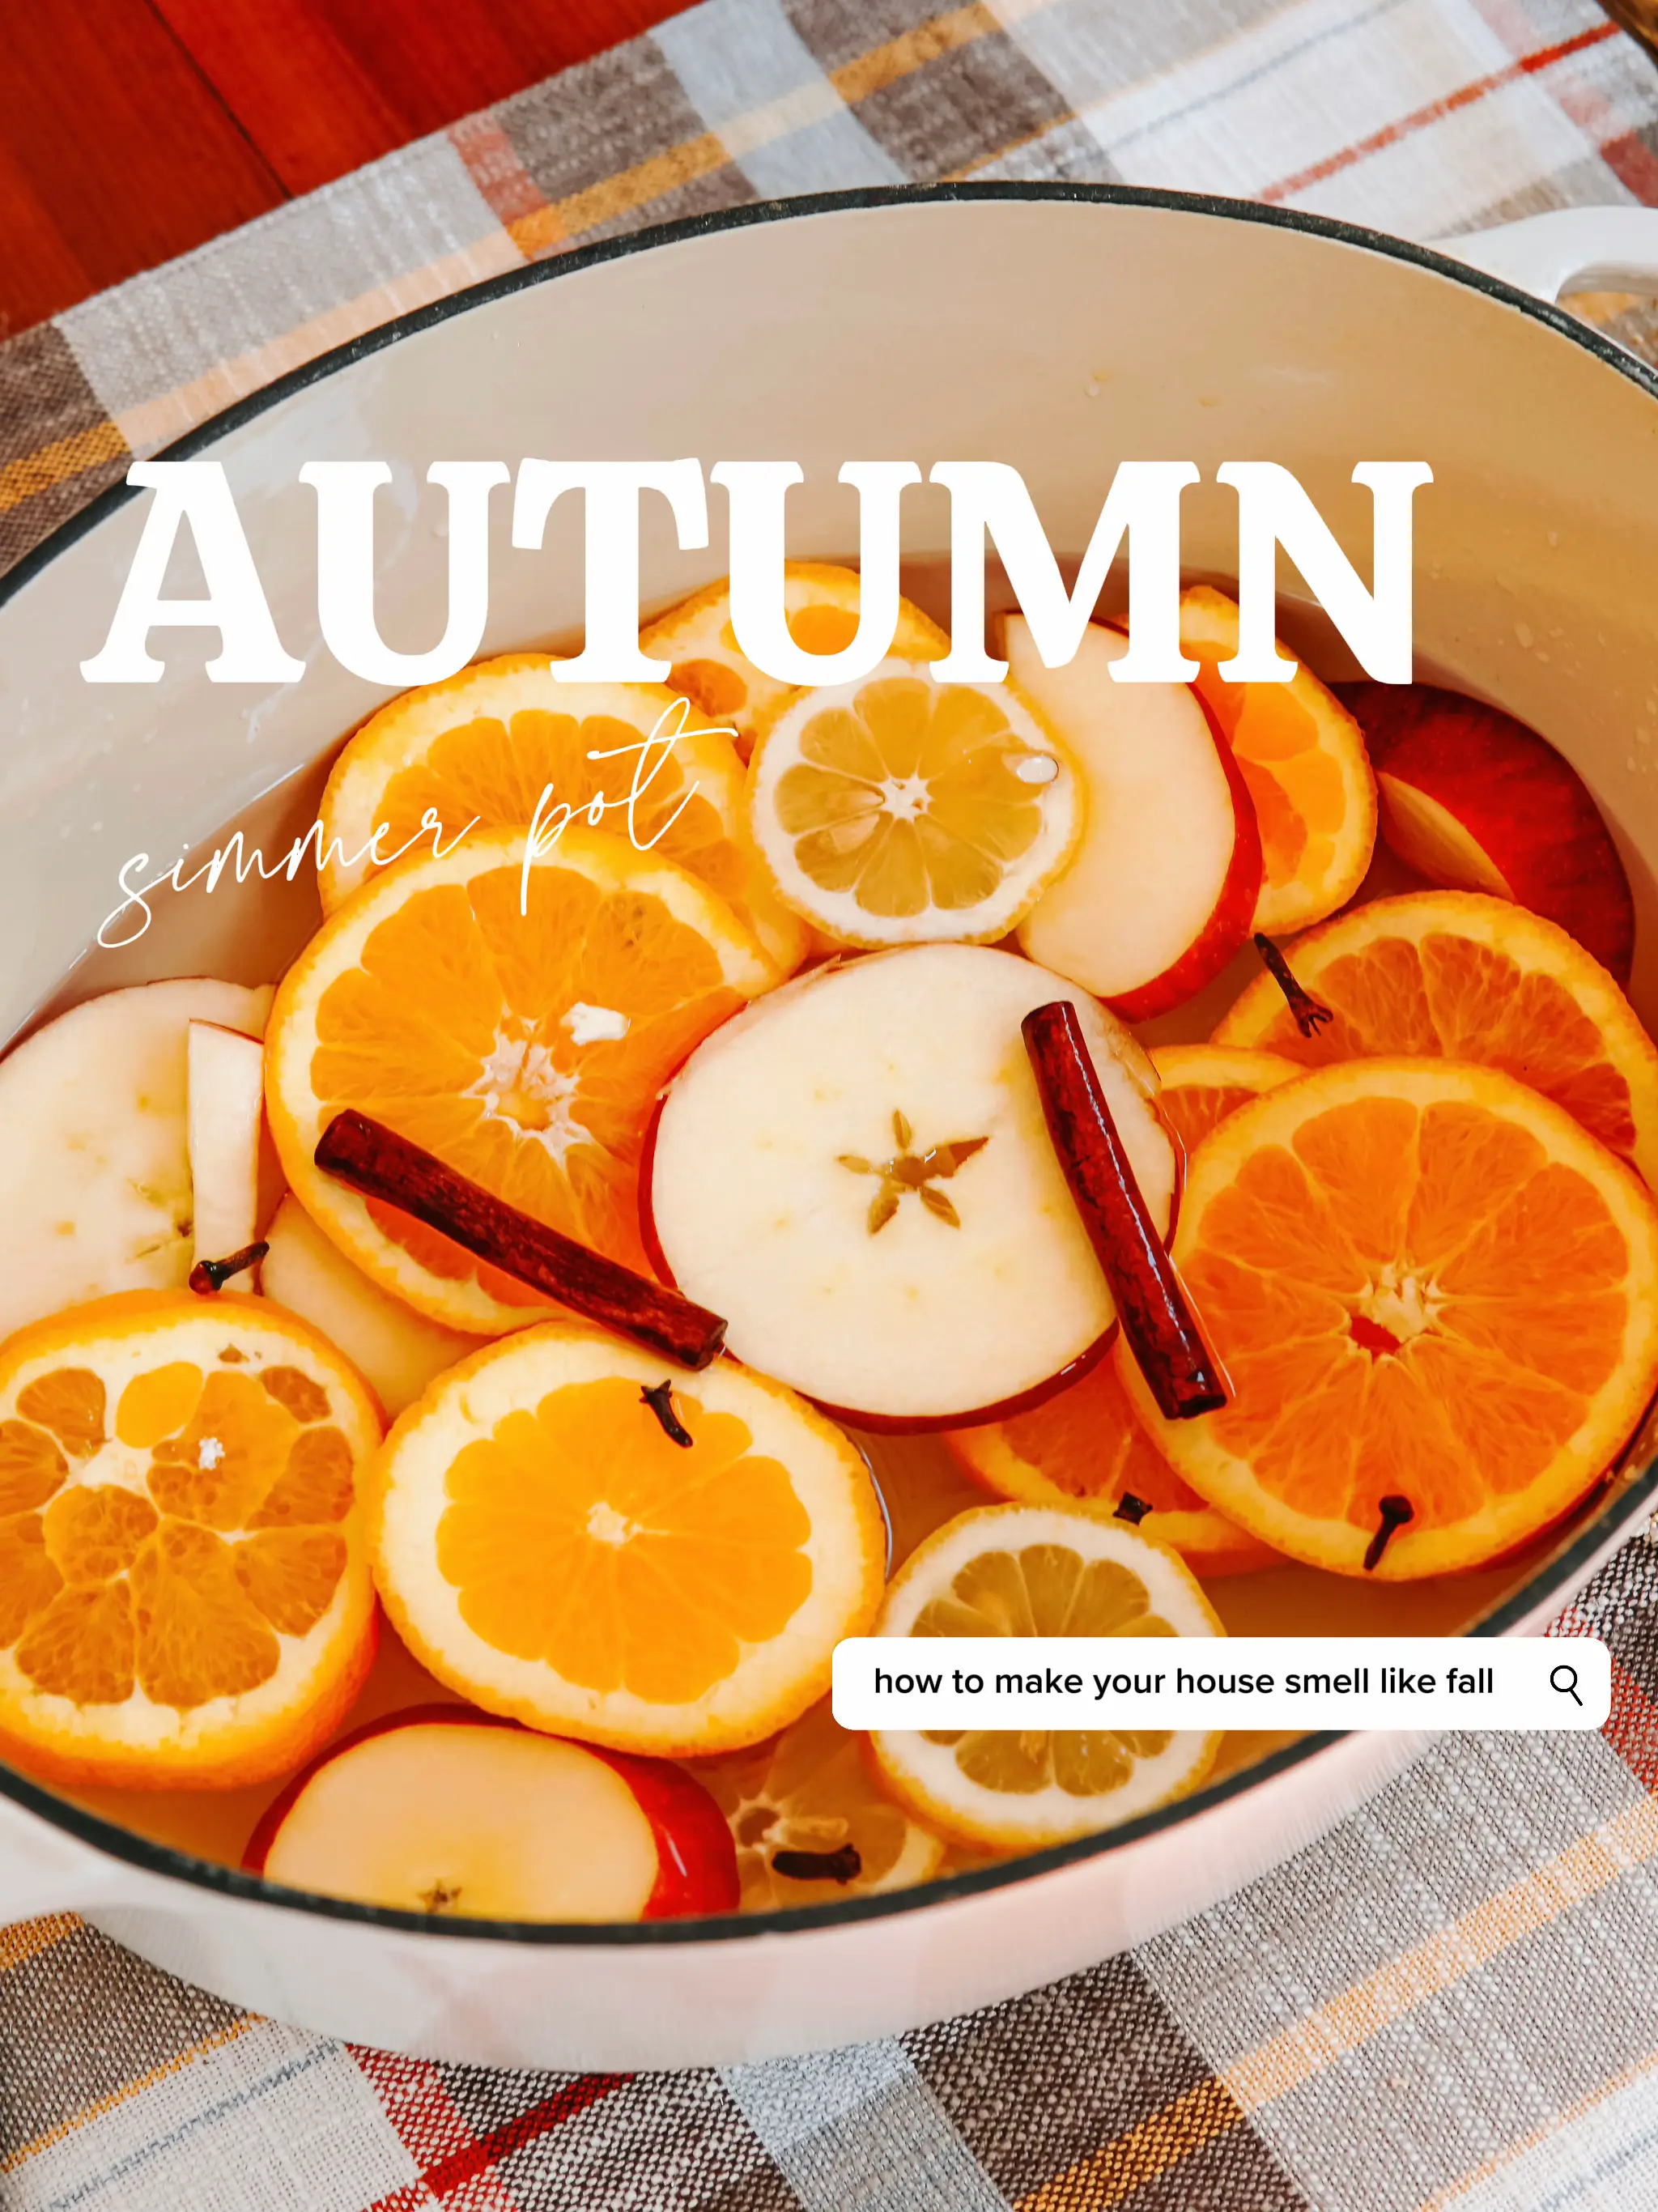 Autumn Simmer Pot